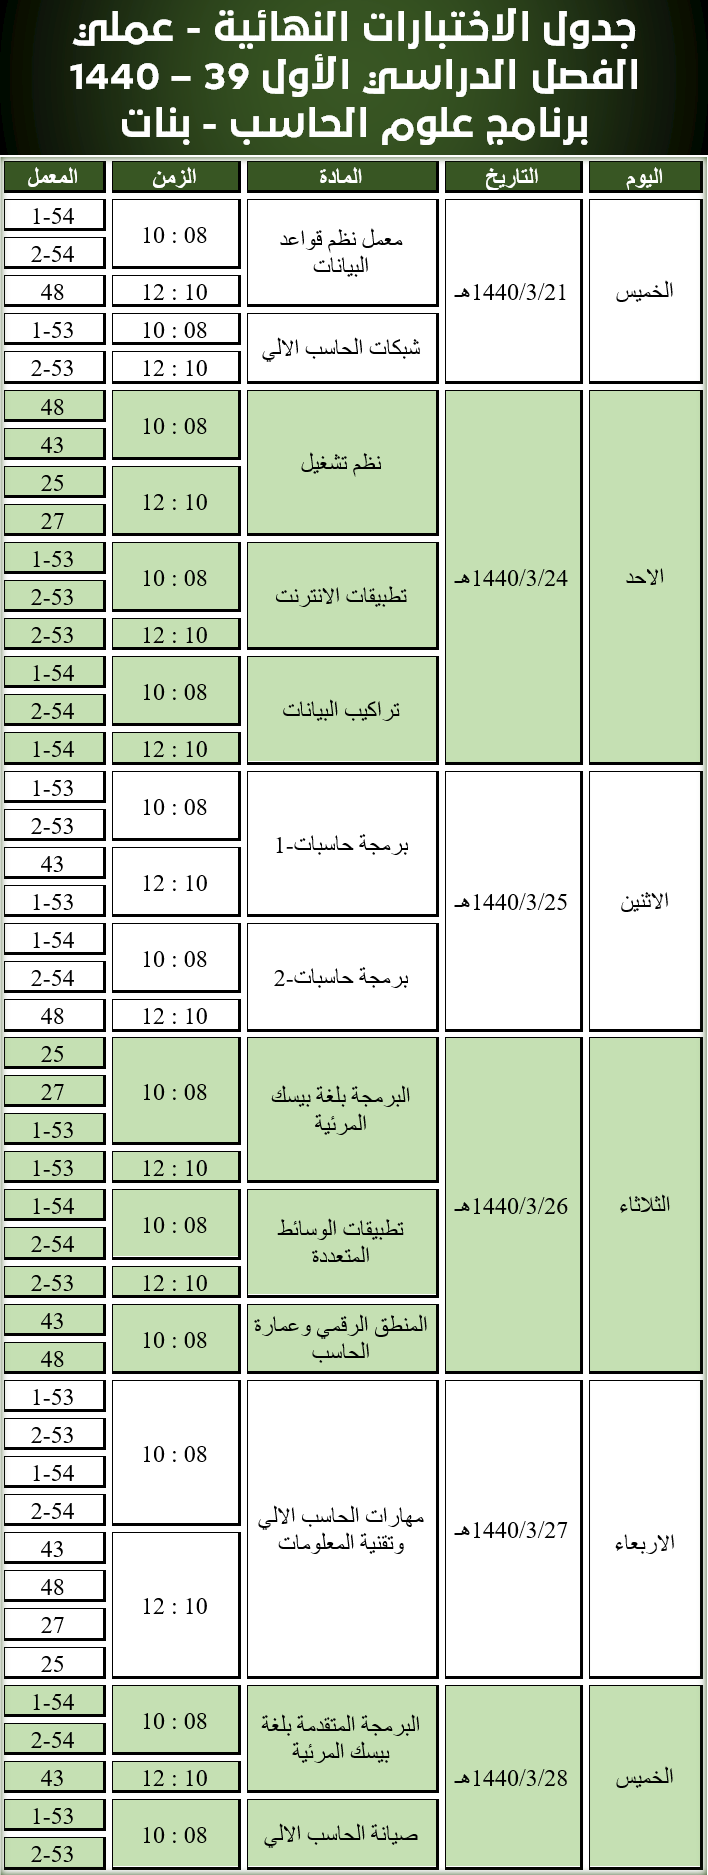 جدول الاختبارات النهائية عملي - علوم الحاسب - الفصل الدراسي الأول 39 - 1440